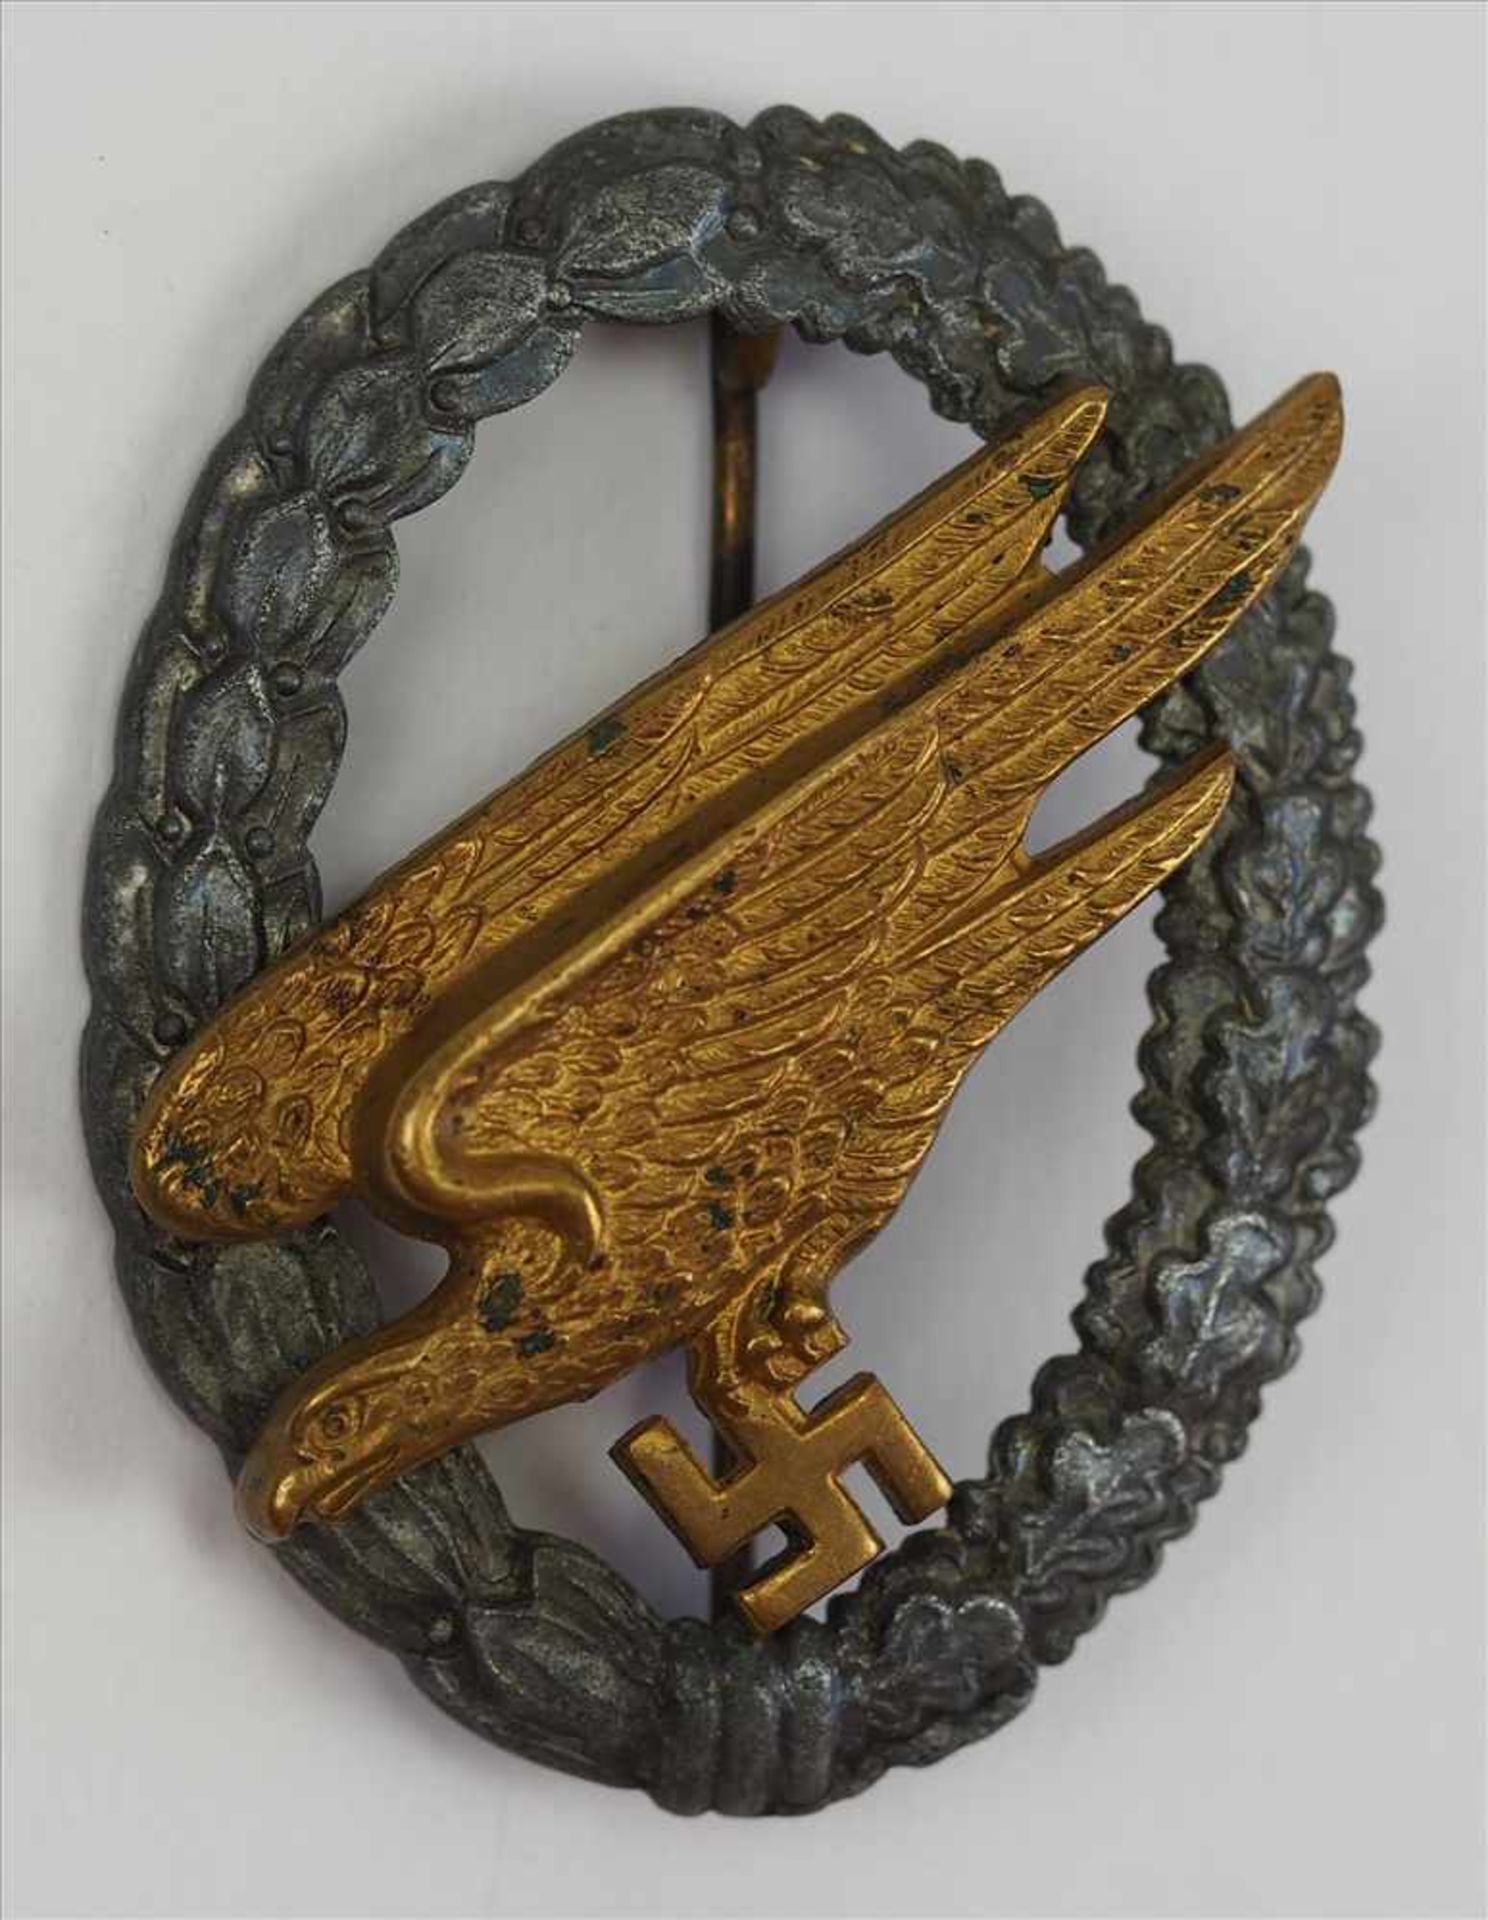 Fallschirmschützen Abzeichen - B&N L.Zink, der Adler vergoldet, rückseitig gepunzt B&N L, auf